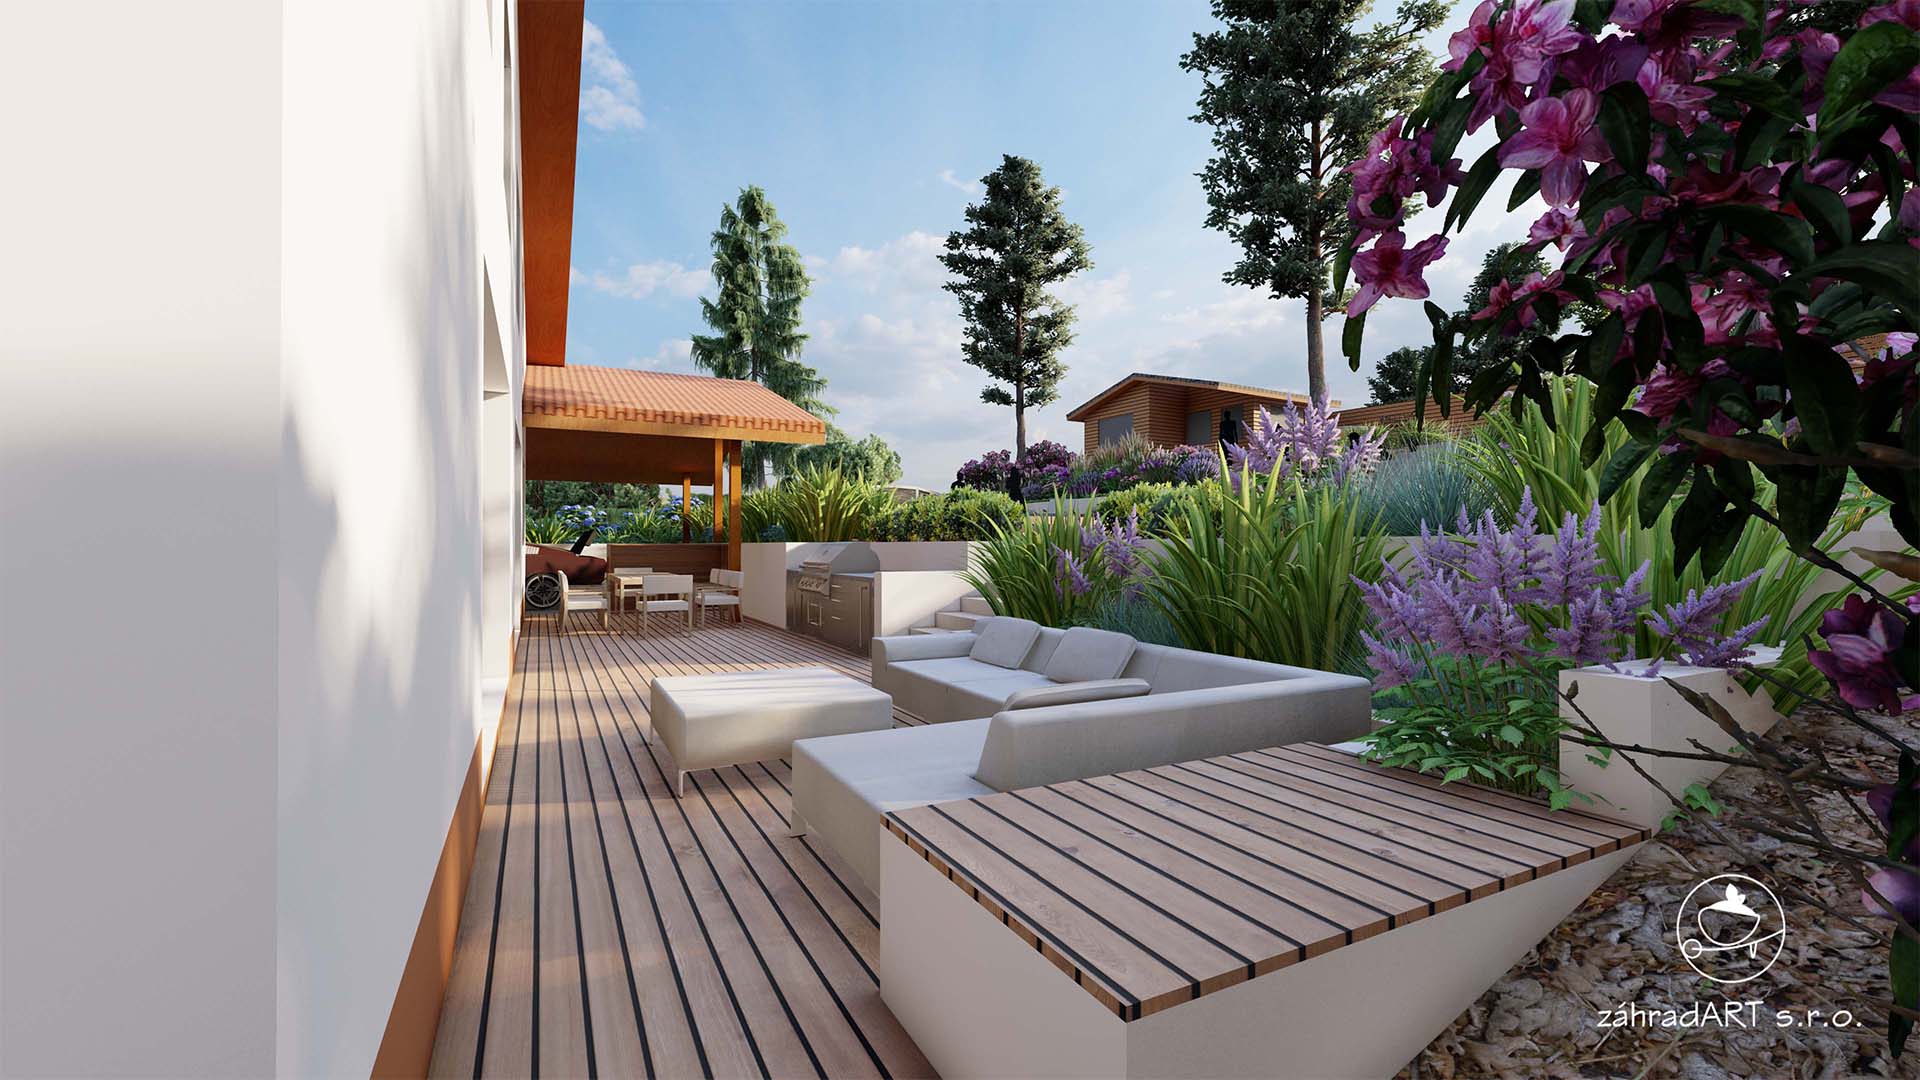 Veľkorysá terasa za domom z exotického dreva poskytuje dostatok priestoru na oddych a stolovanie